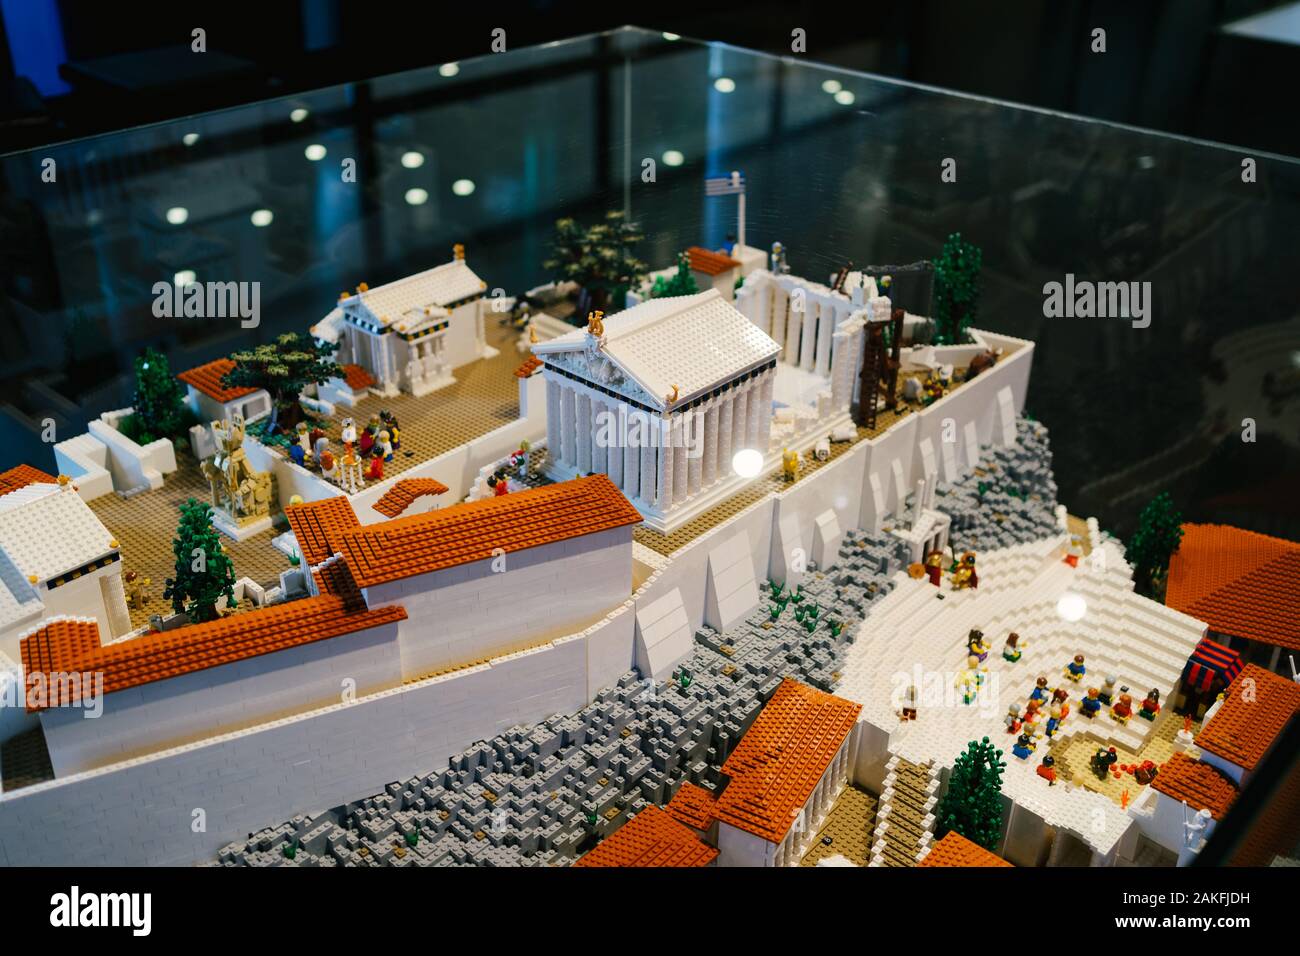 Athen, Griechenland - Dec 22, 2019: Lego Miniatur der Akropolis, Ausstellung im Akropolis-Museum in Athen, Griechenland, Europa Stockfoto